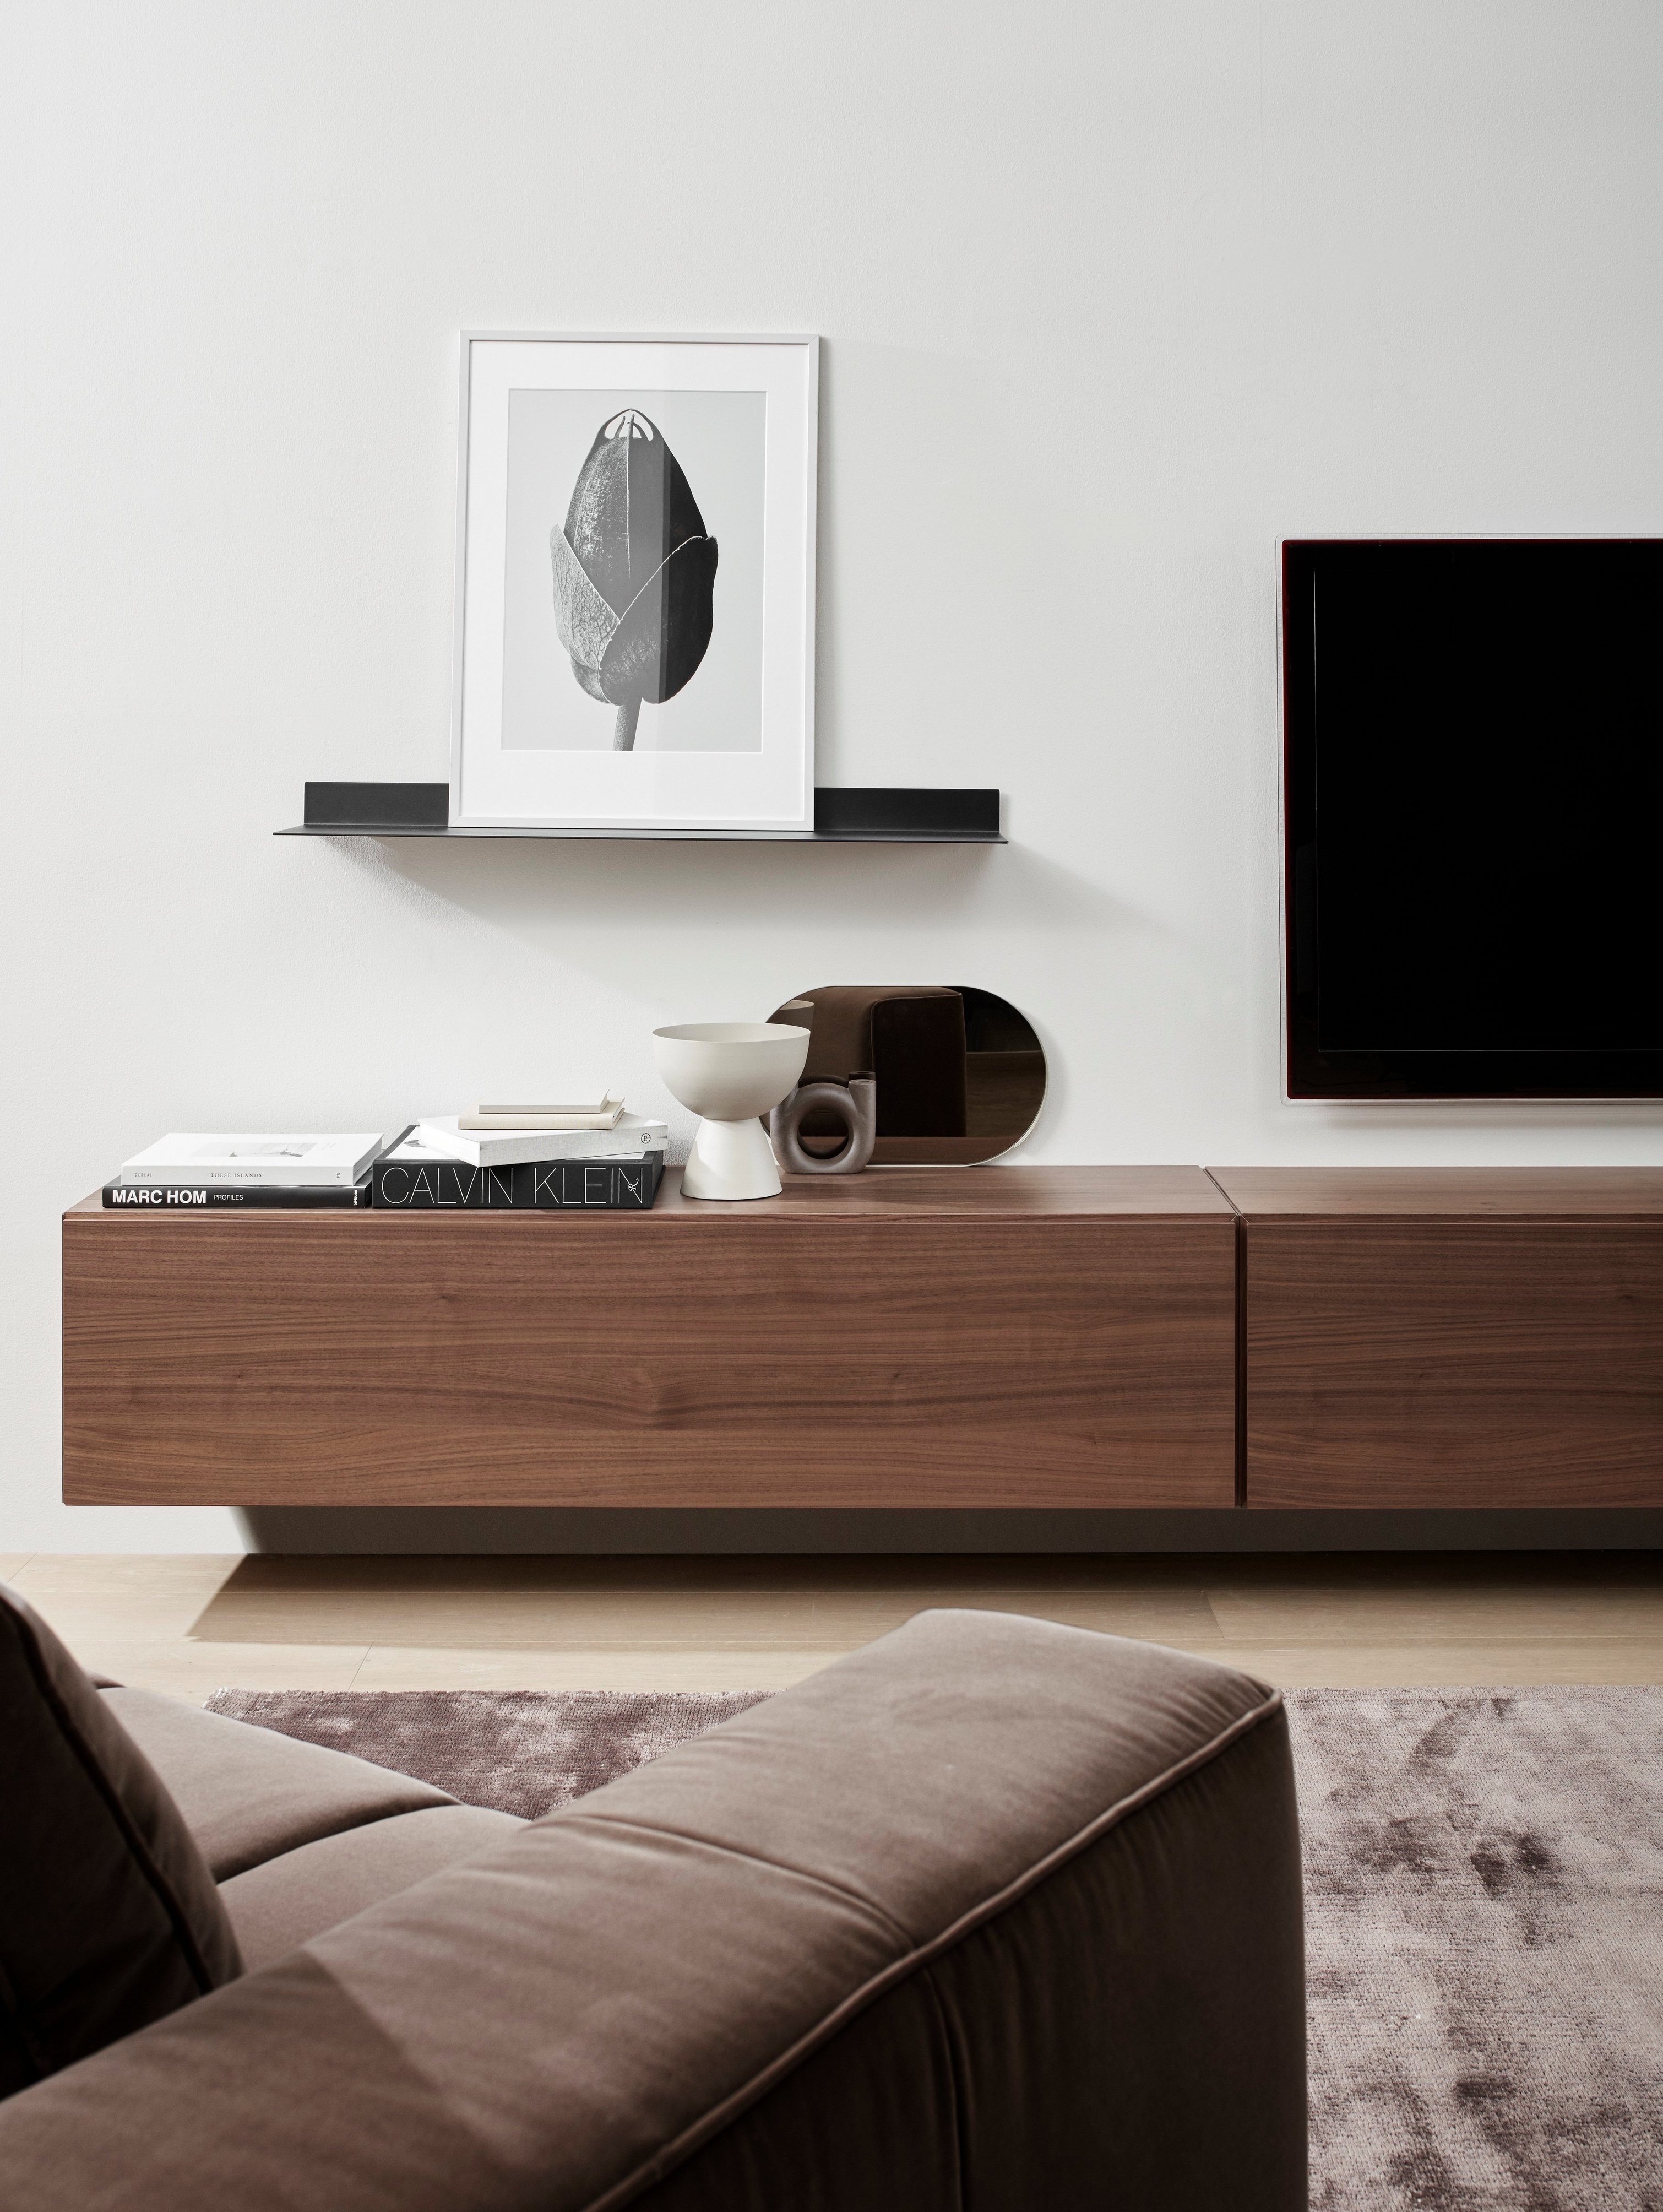 Detalle de sala minimalista con sofá marrón, módulo multimedia de madera, arte abstracto y decoración moderna.